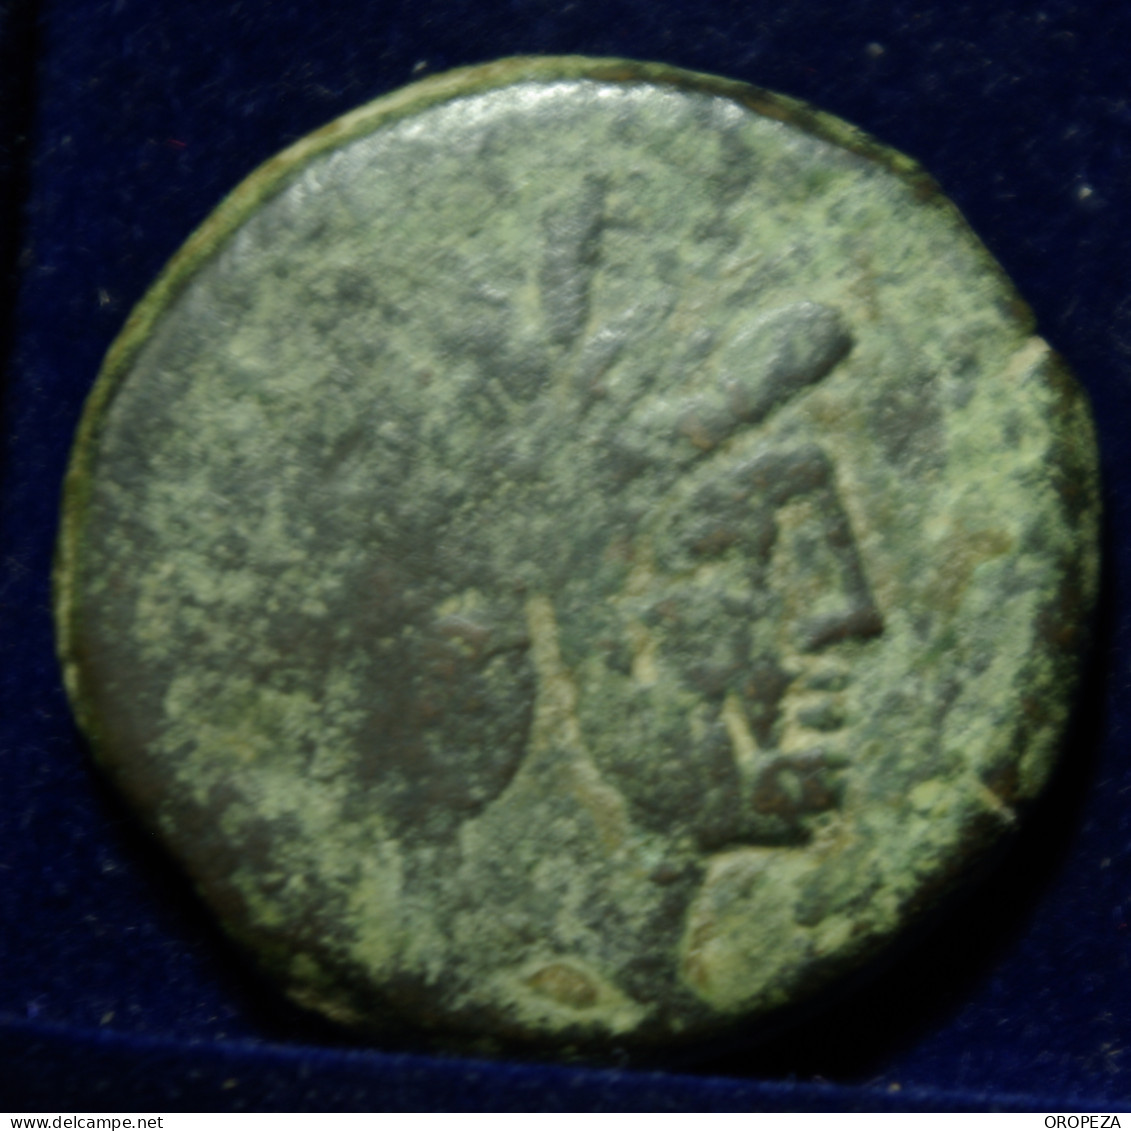 102  -  BONITO  AS  DE  JANO - SERIE SIMBOLOS -   ARADO - MBC - Republic (280 BC To 27 BC)